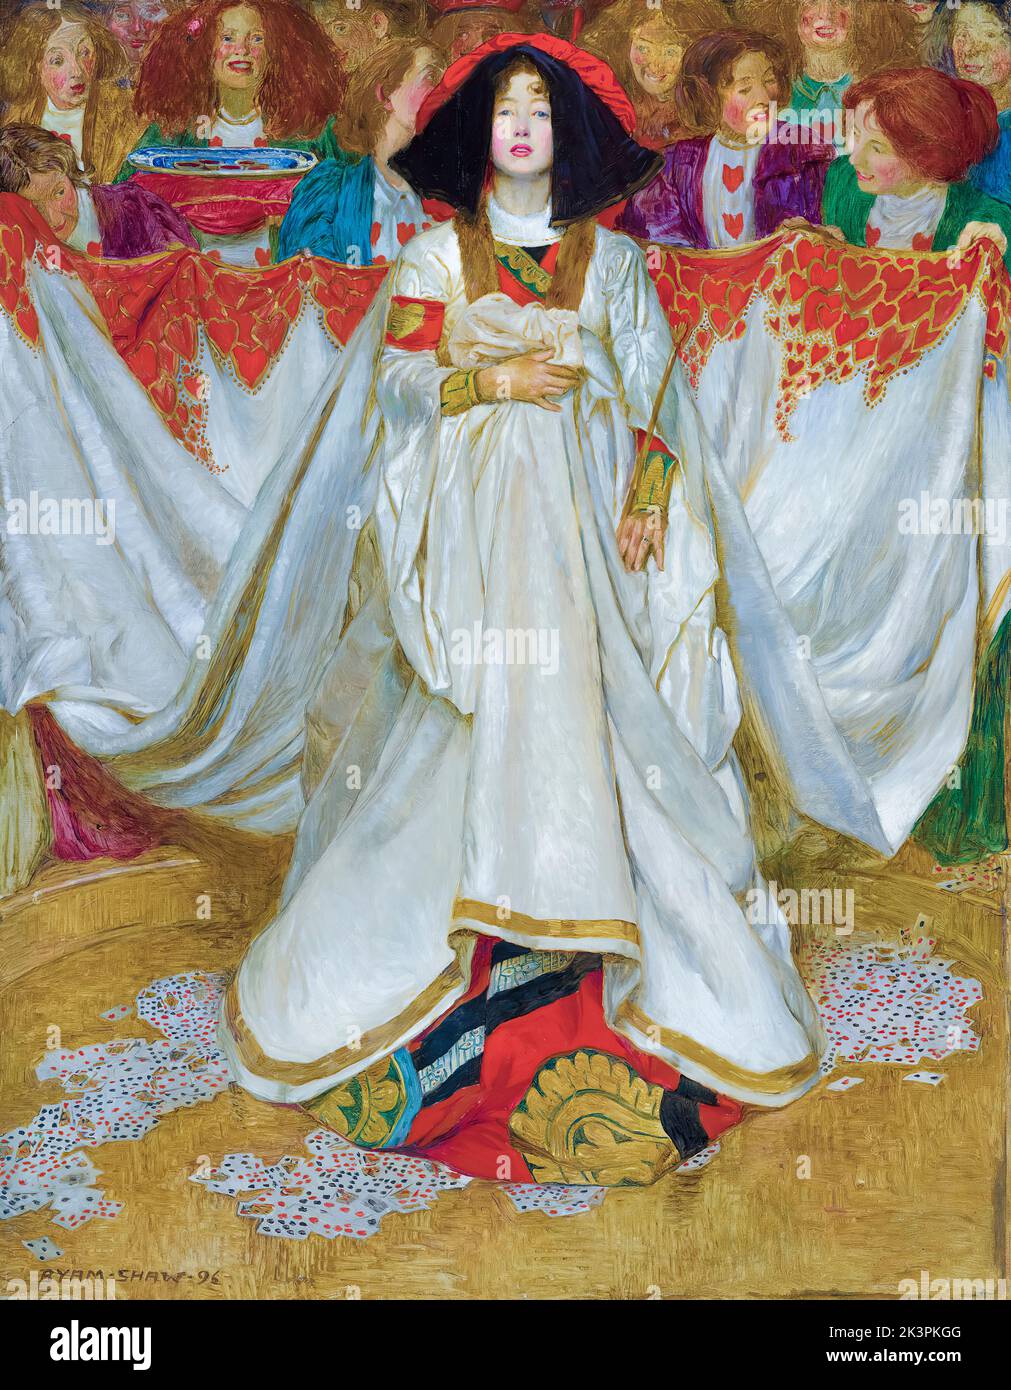 La Reine des coeurs, peinture à l'huile sur toile par Byam Shaw, 1896 Banque D'Images